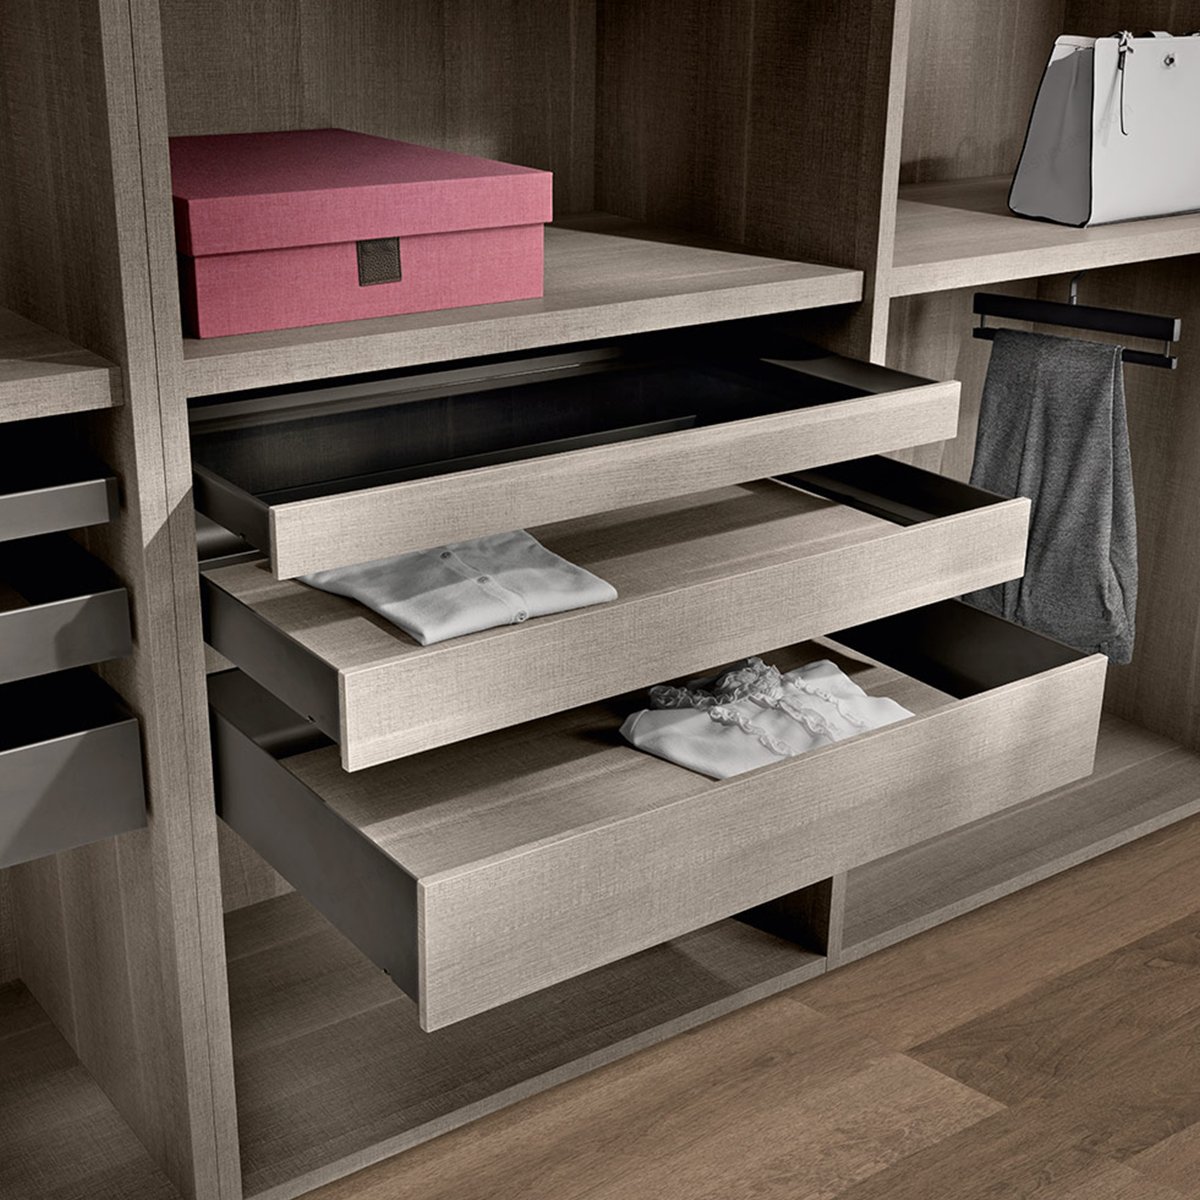 3 sided drawer H 78 铝制三侧抽屉 用于正面木质抽屉